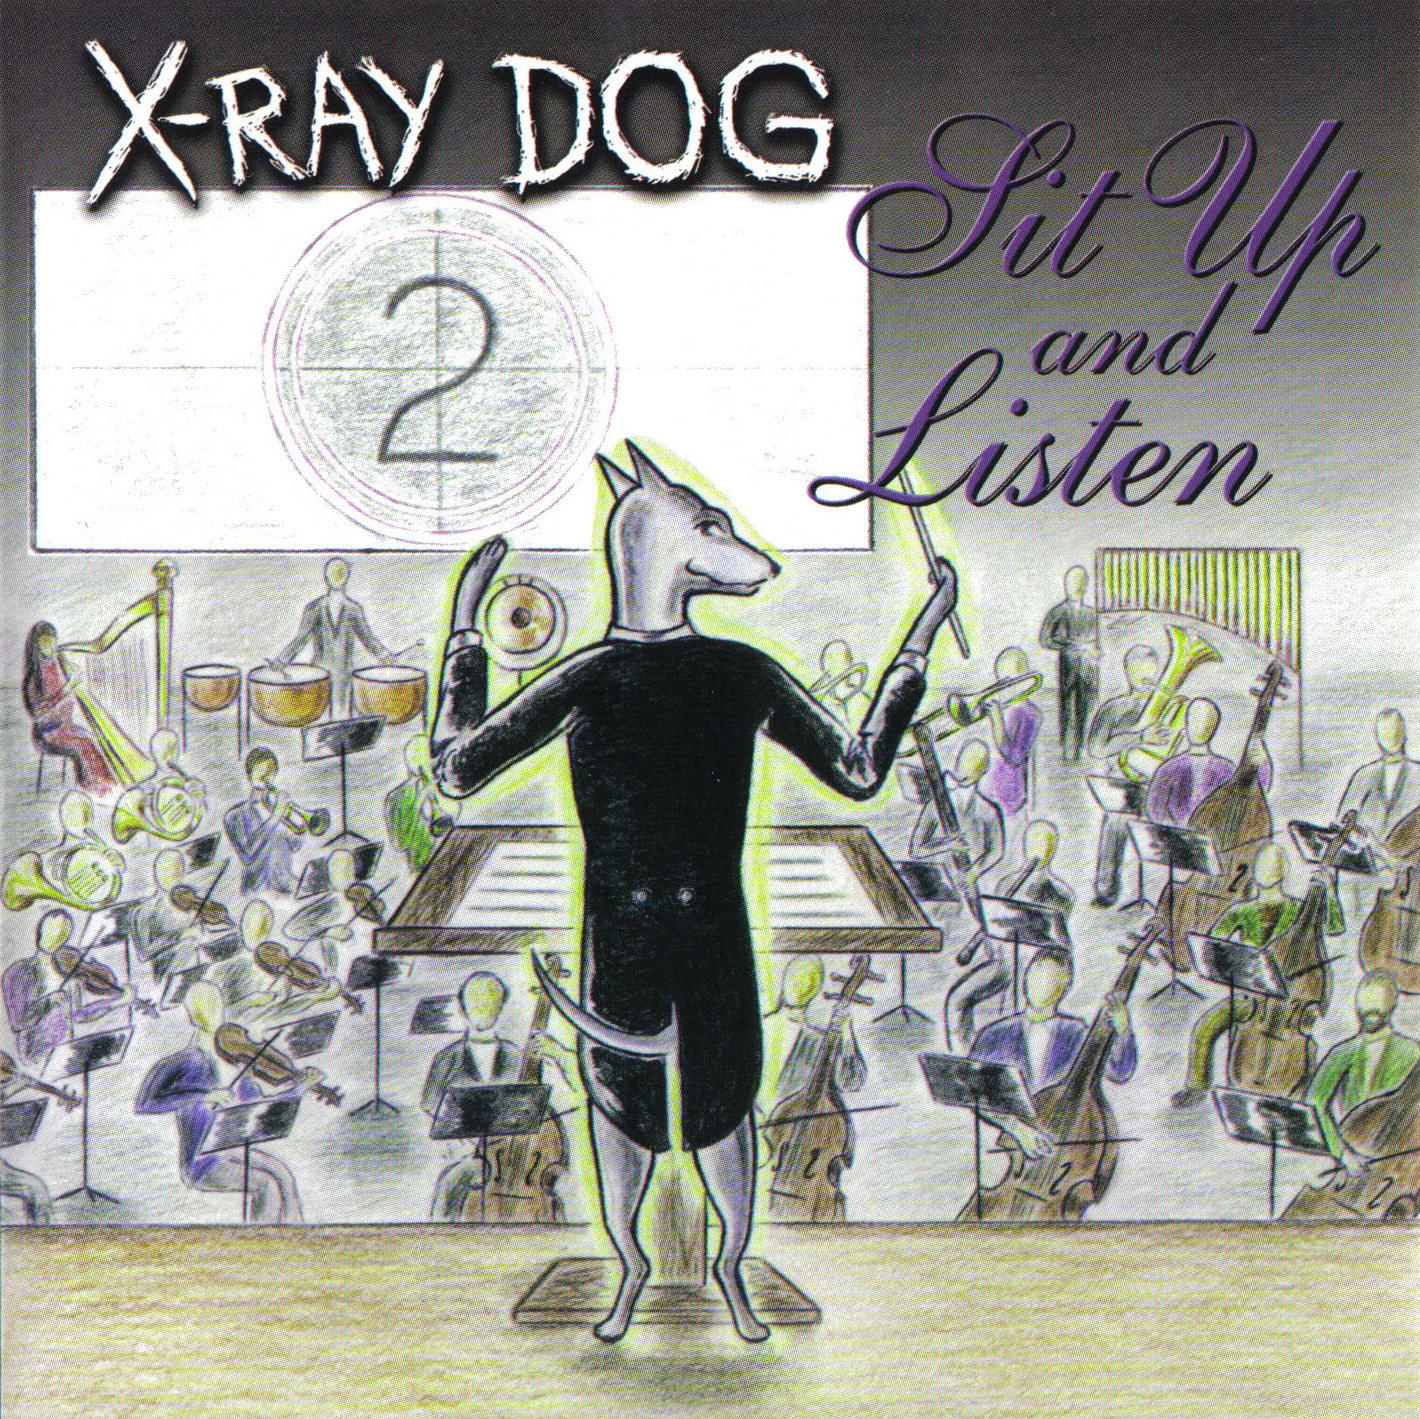 x-ray dog countdown